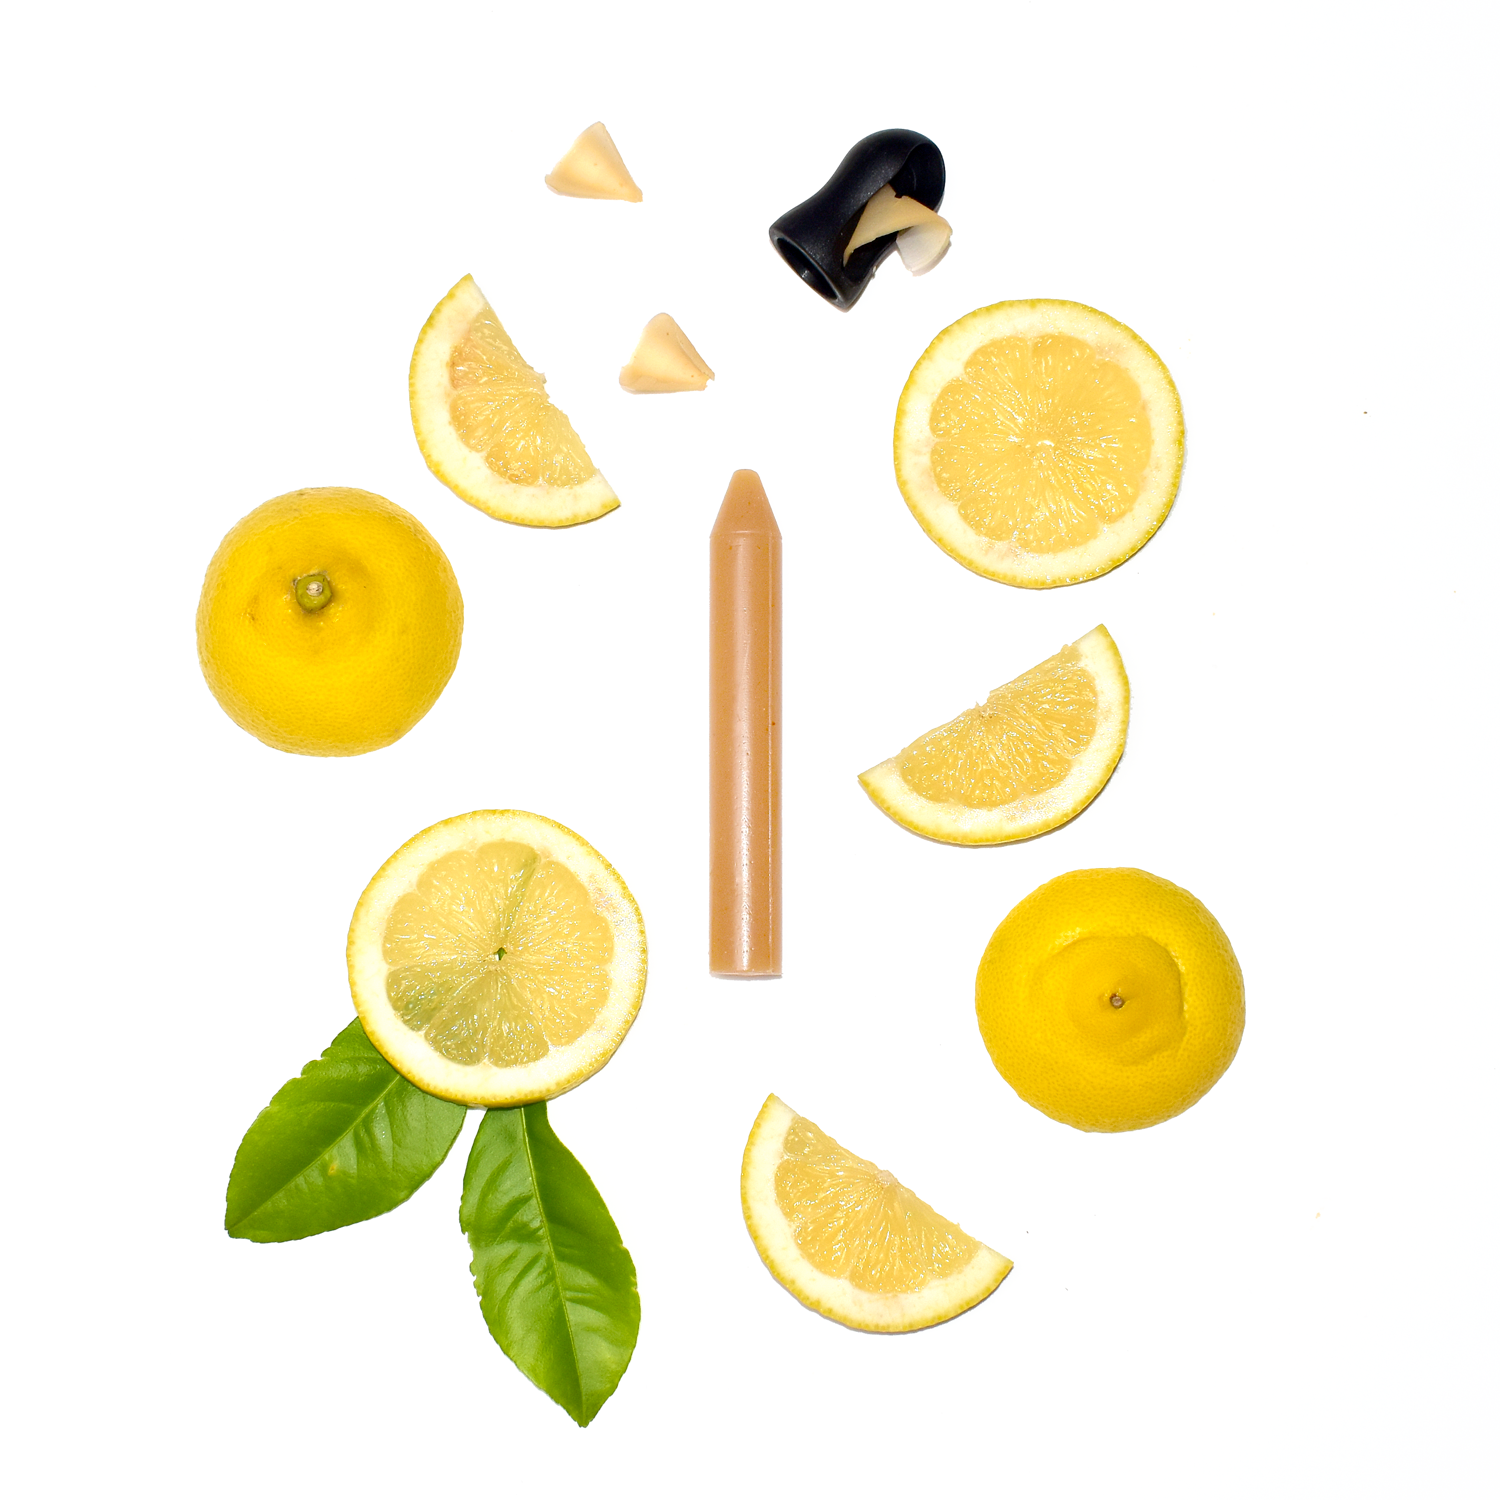 Le crayon d'assaisonnement Citron confit bio d'OCNI